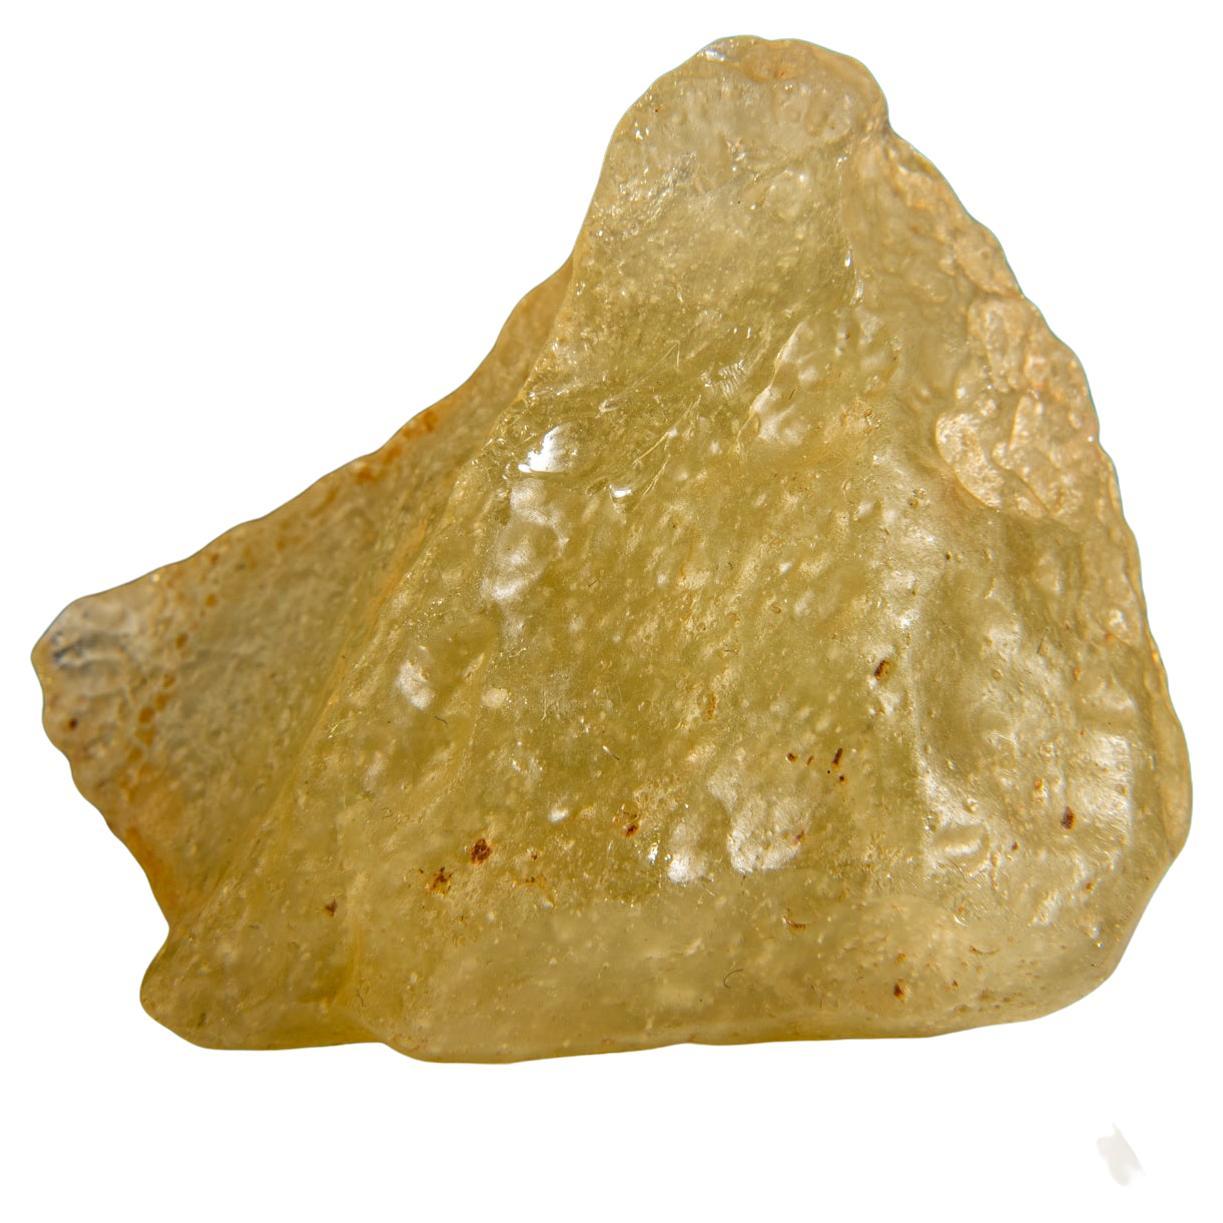 Tektite authentique en verre du désert de Liban dans une boîte d'exposition  (92,9 grammes)